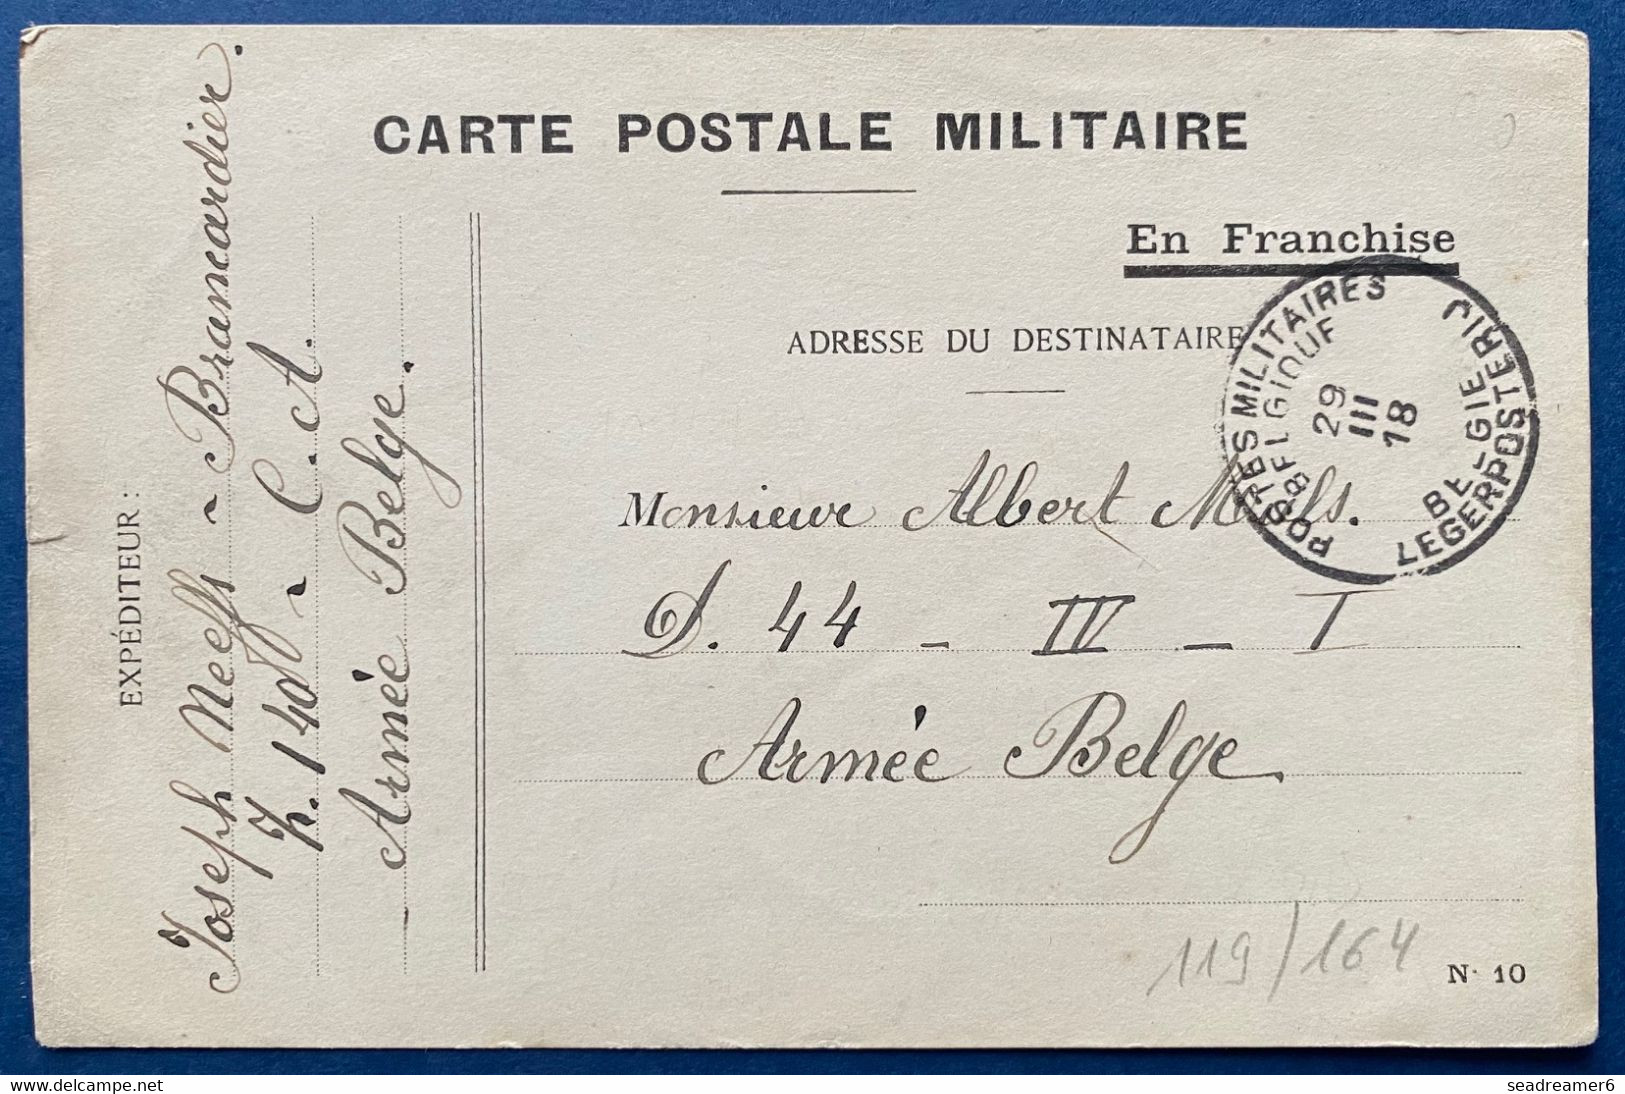 Carte Postale Militaire En Franchise Type N°10 Obl Dateur 29 Mars 1918 Postes Militaires Belgique PMB Pour Un Soldat TTB - Esercito Belga